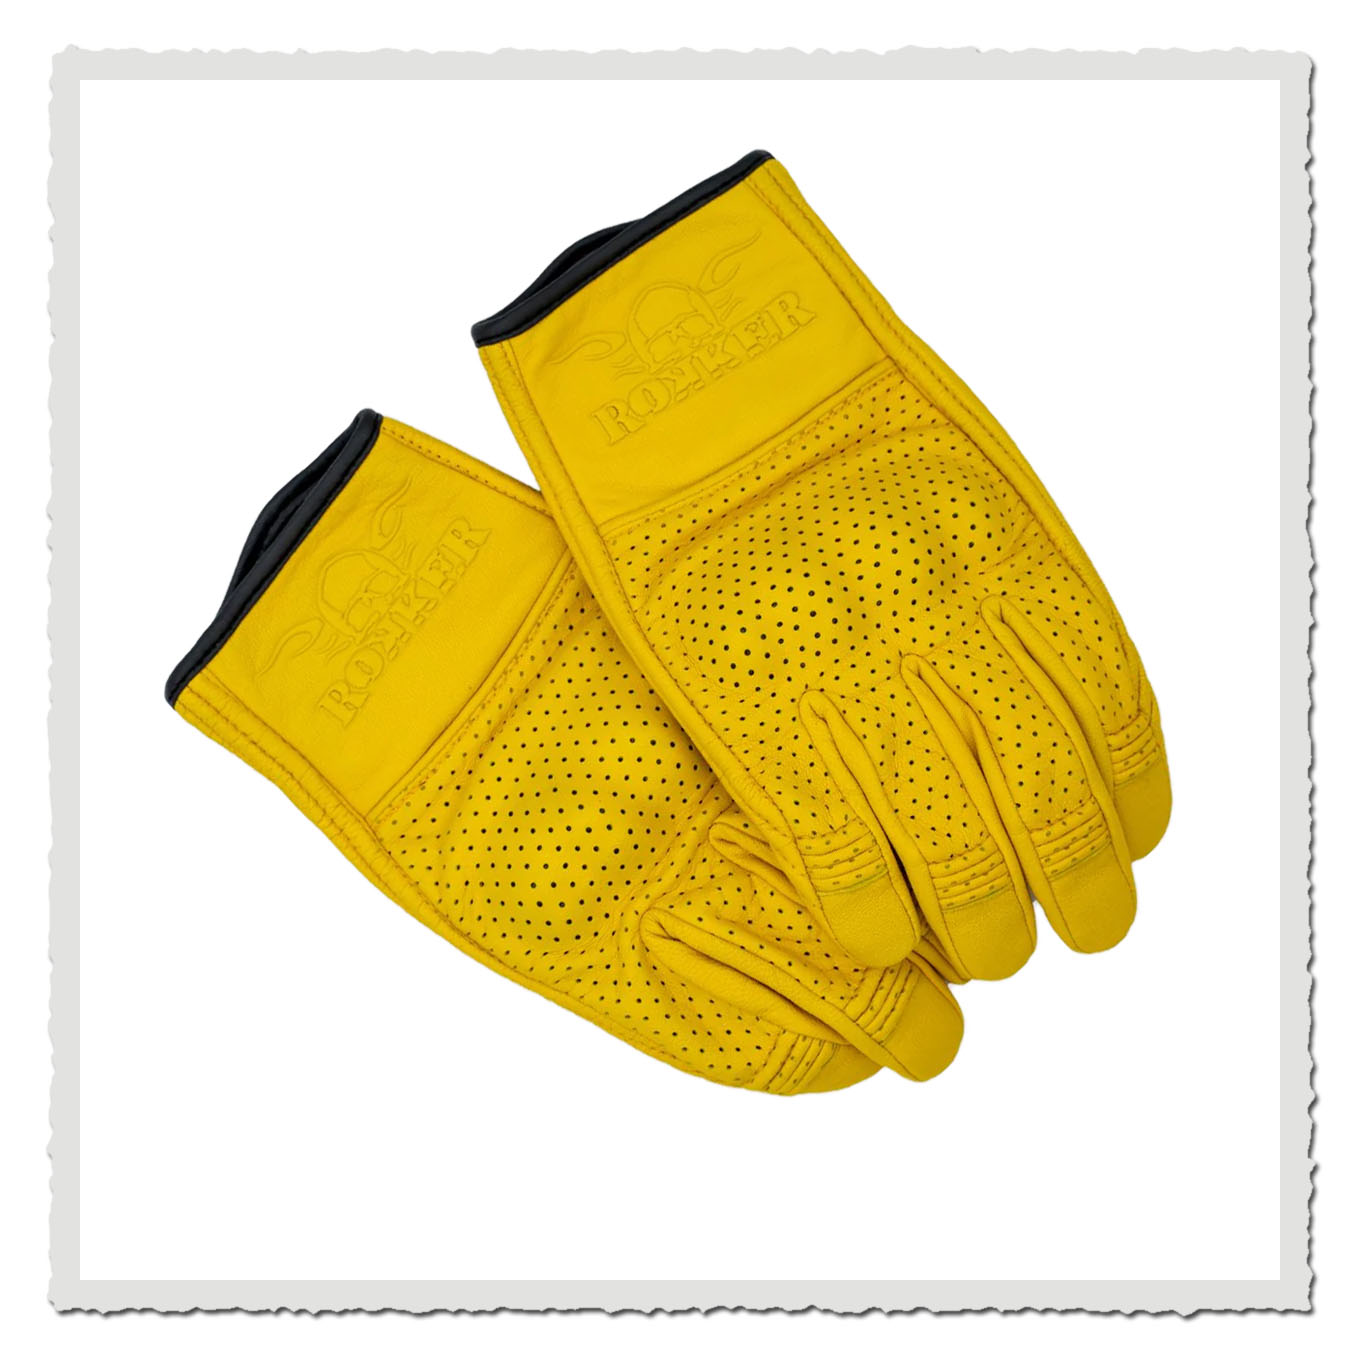 Motorrad Handschuhe Tuscon Natural Yellow